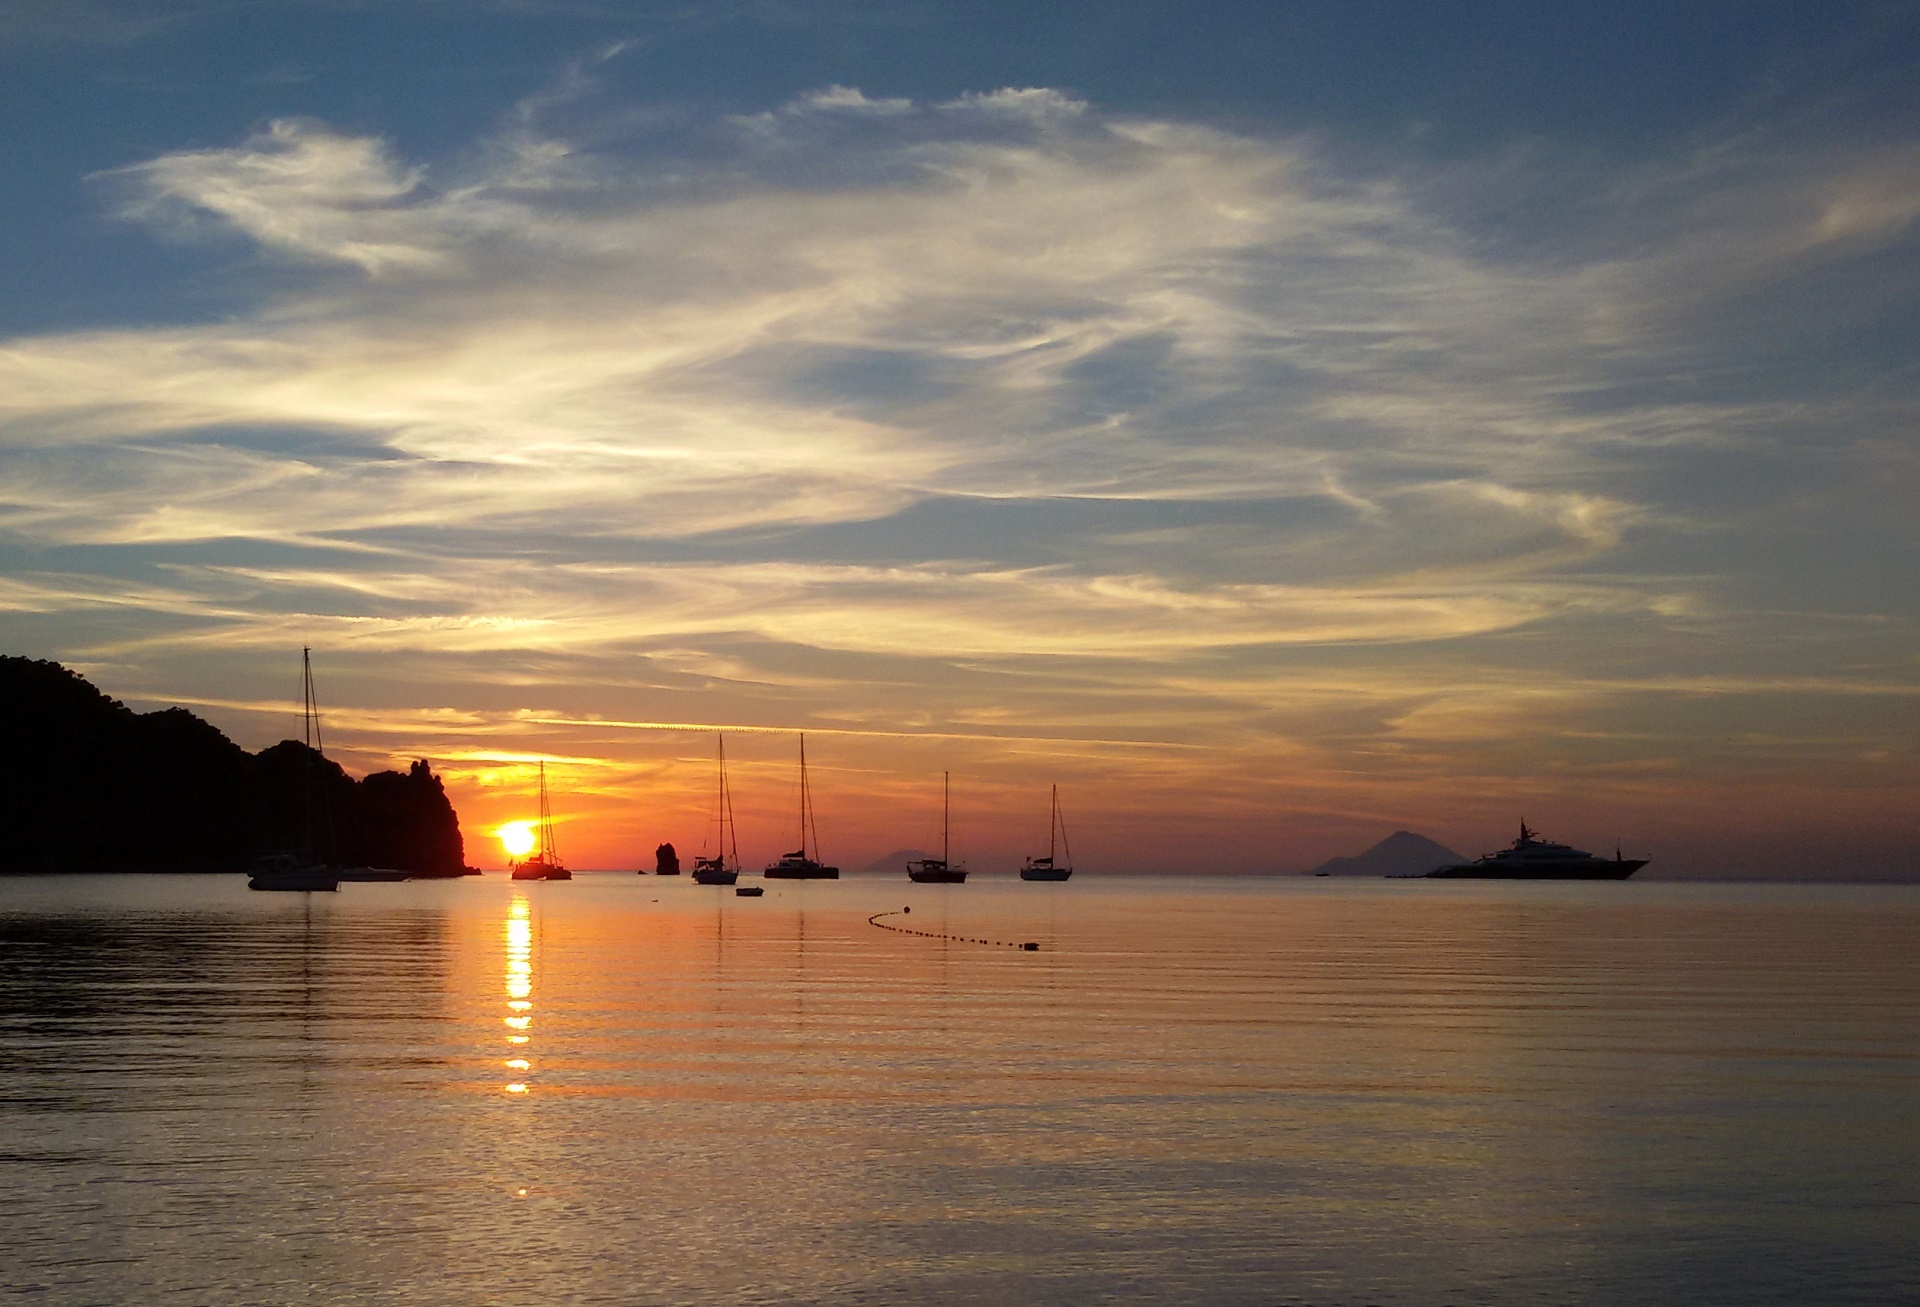 Zu sehen ist der tiefrote Sonnenuntergang über den Liparischen Inseln am Horizont und den Booten, die auf dem ruhigen Meer ankern.